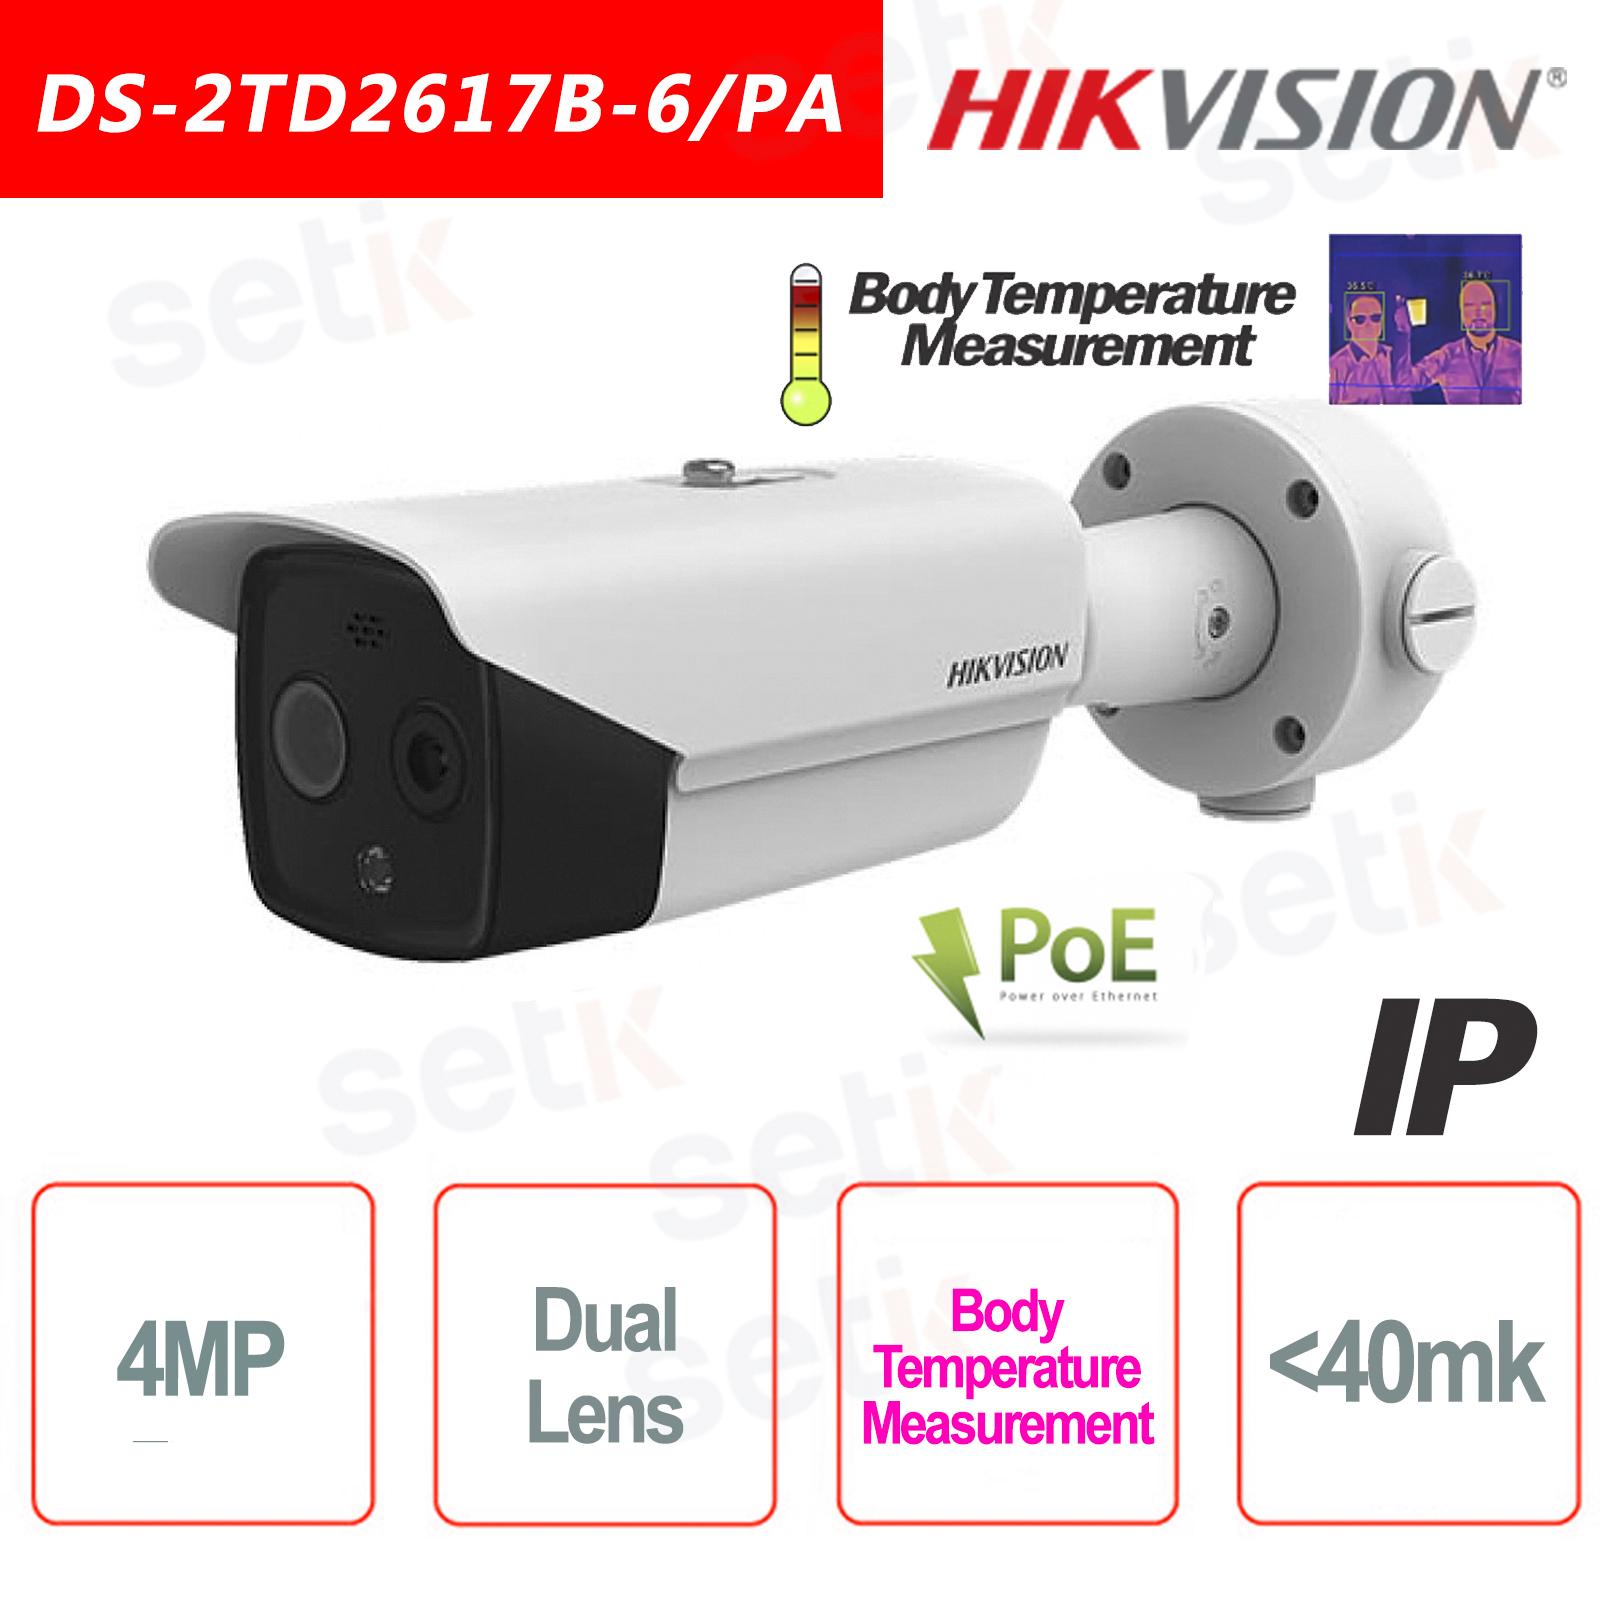 Ip Poe Hikvision Thermal Bullet Camera Body Measurement